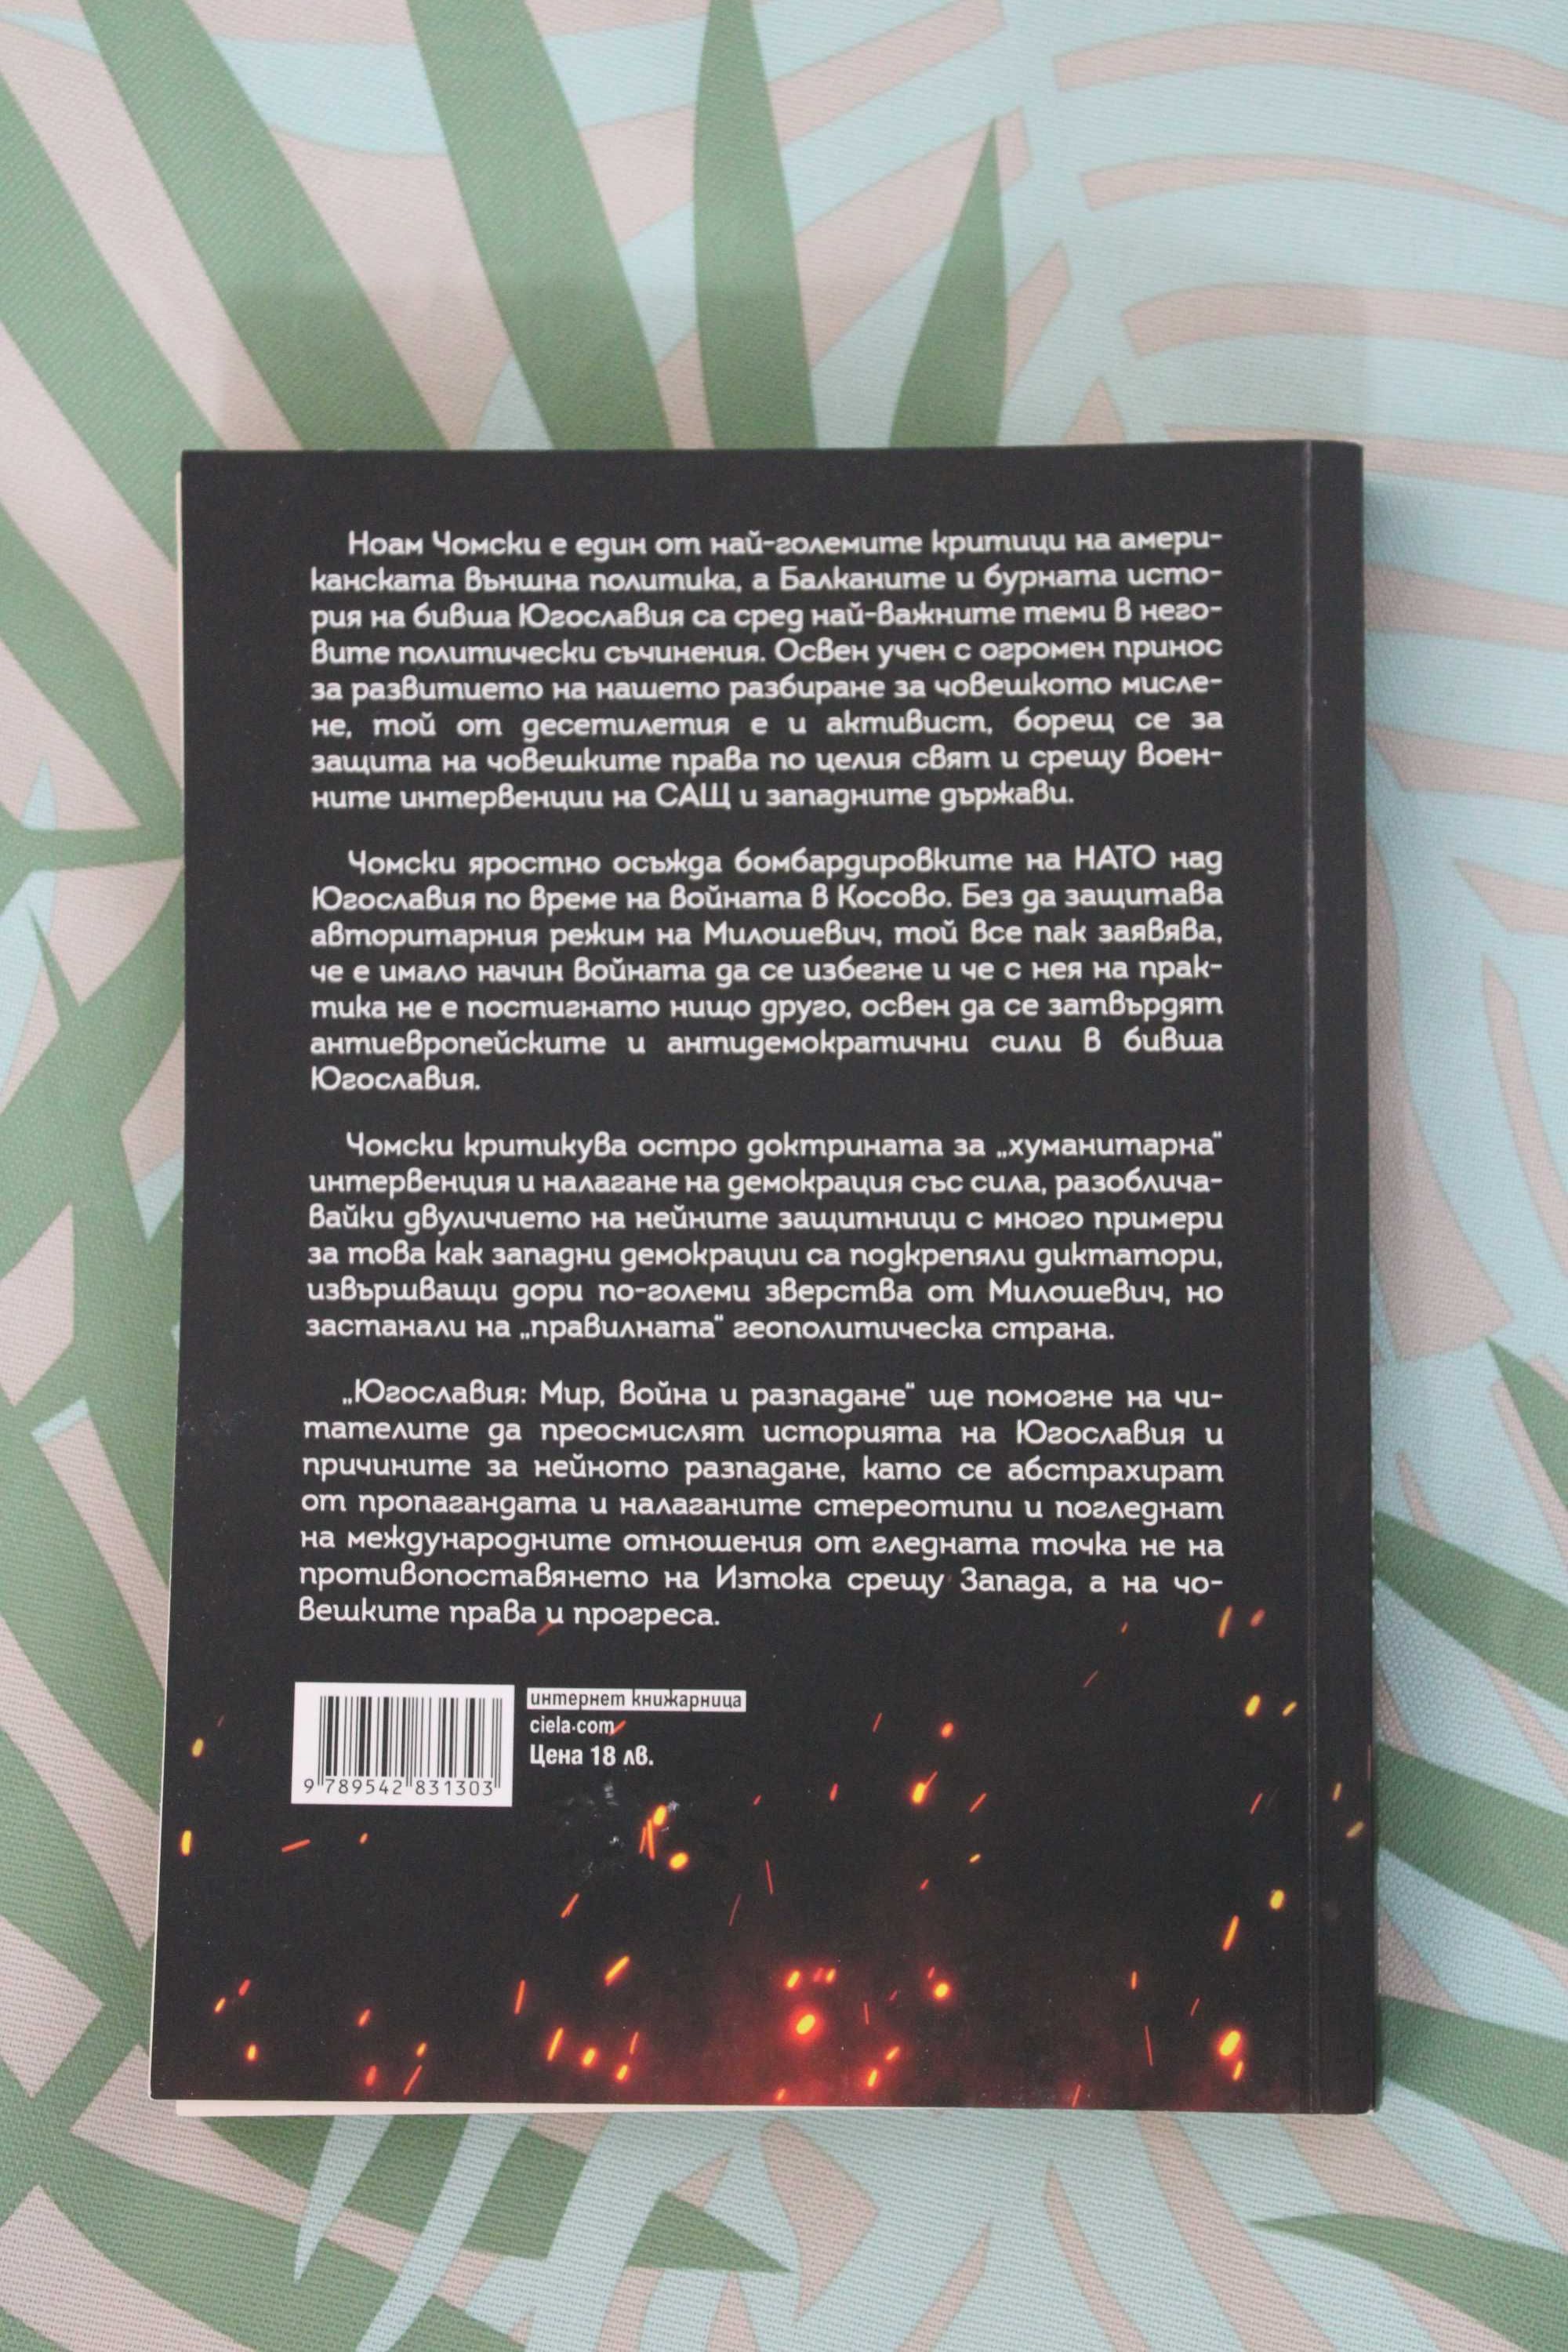 Книга "Югославия", от: Ноам Чомски & Давор Джалто, изд: Ciela